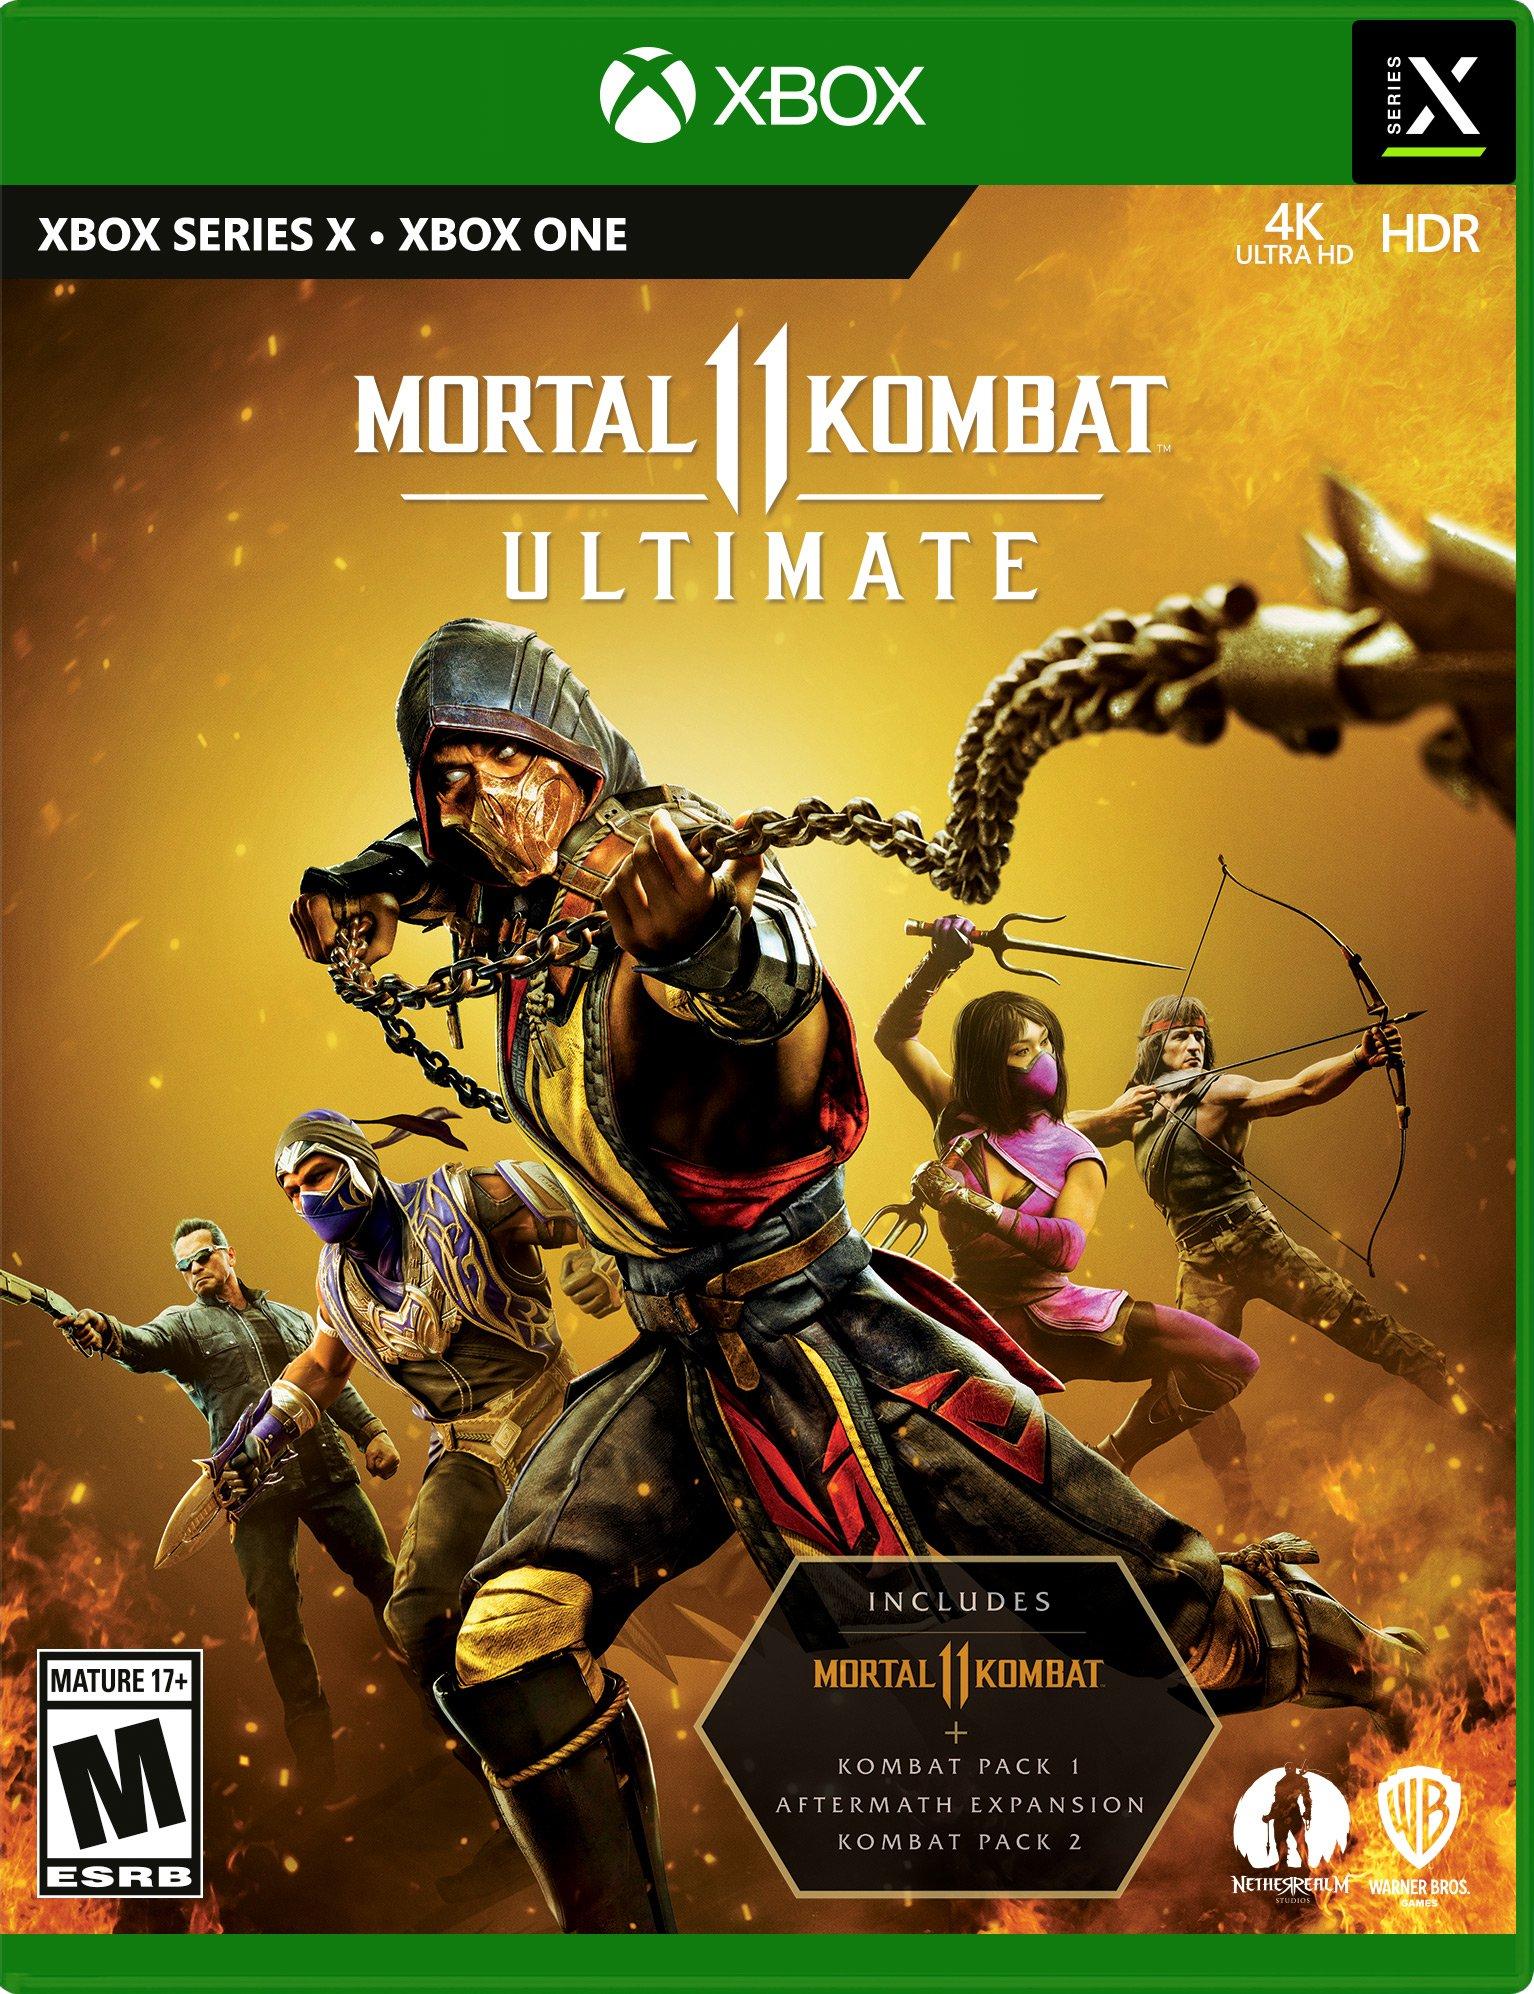 Mortal Kombat 11 Ultimate, All Fatalities on Kitana